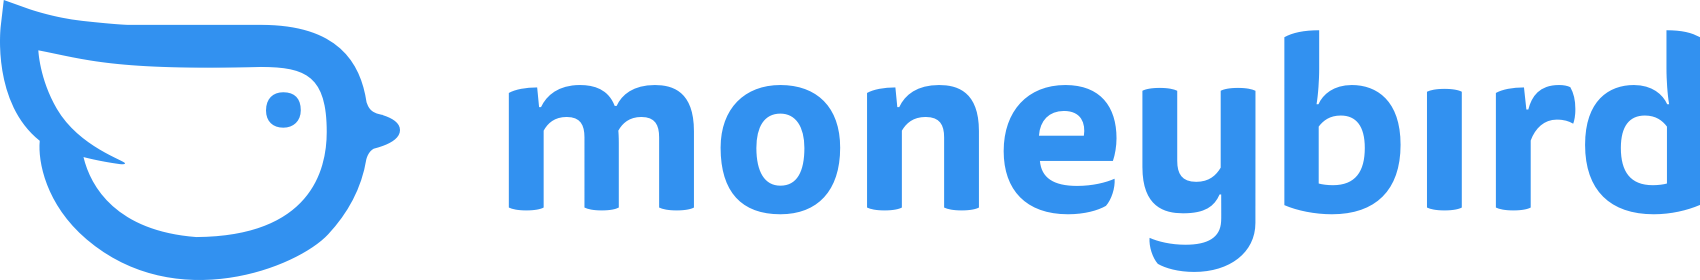 moneybird-logo-full-blue-296cefaf